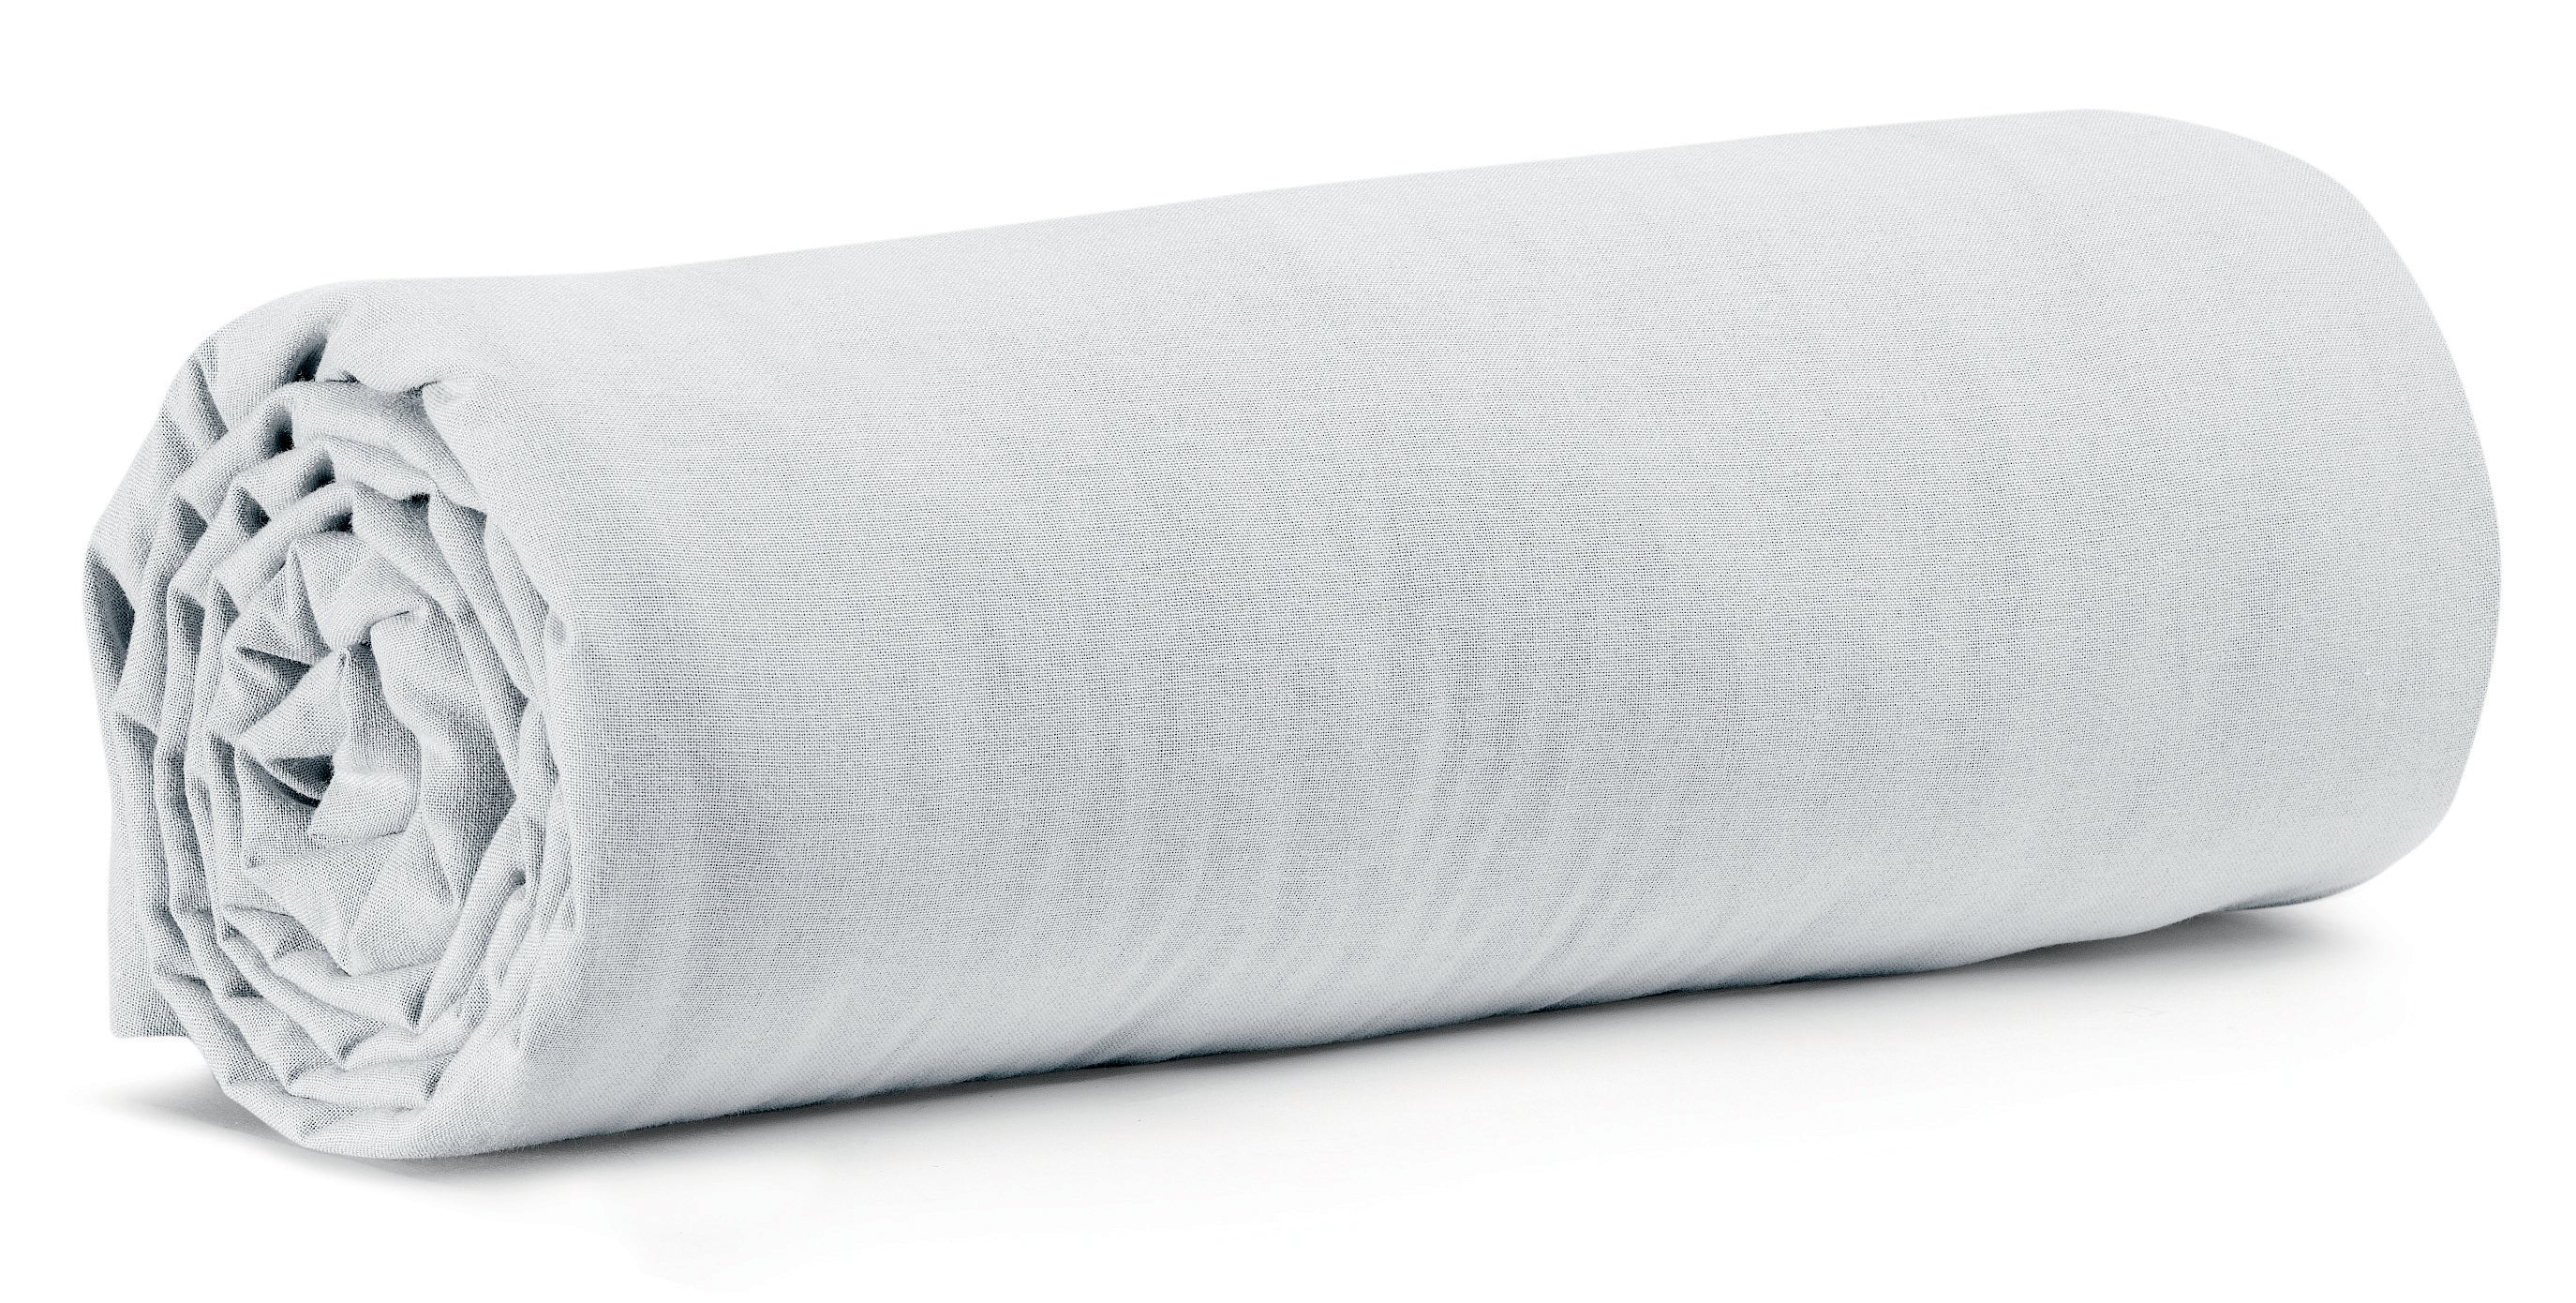 Drap Housse Calita en coton lavé 180x200 cm - Vivaraise, 180*200 cm / Blanc